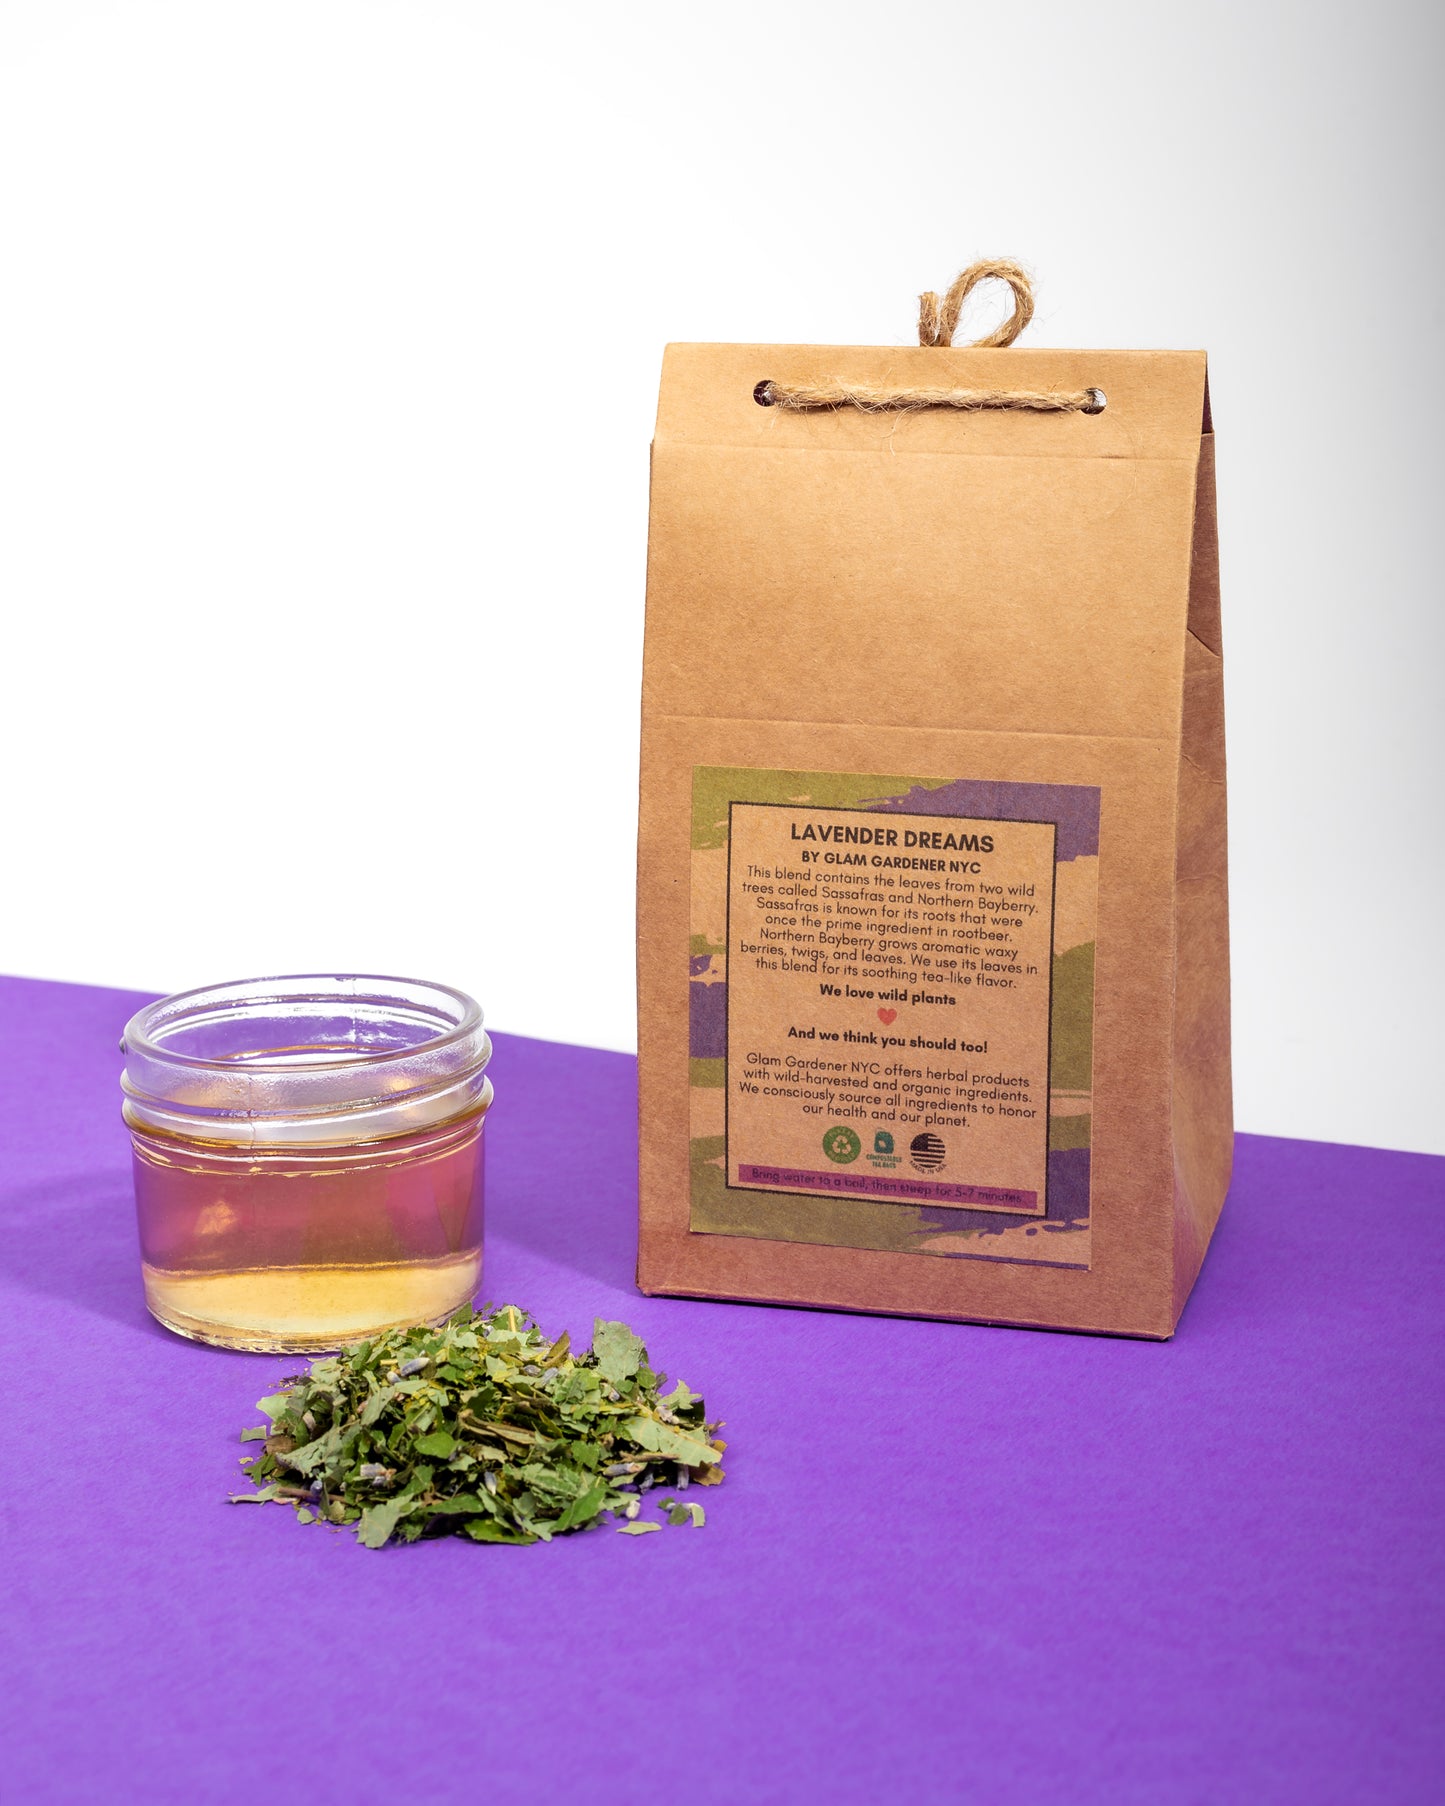 Lavender dreams bagged herbal tea (designed for rest)